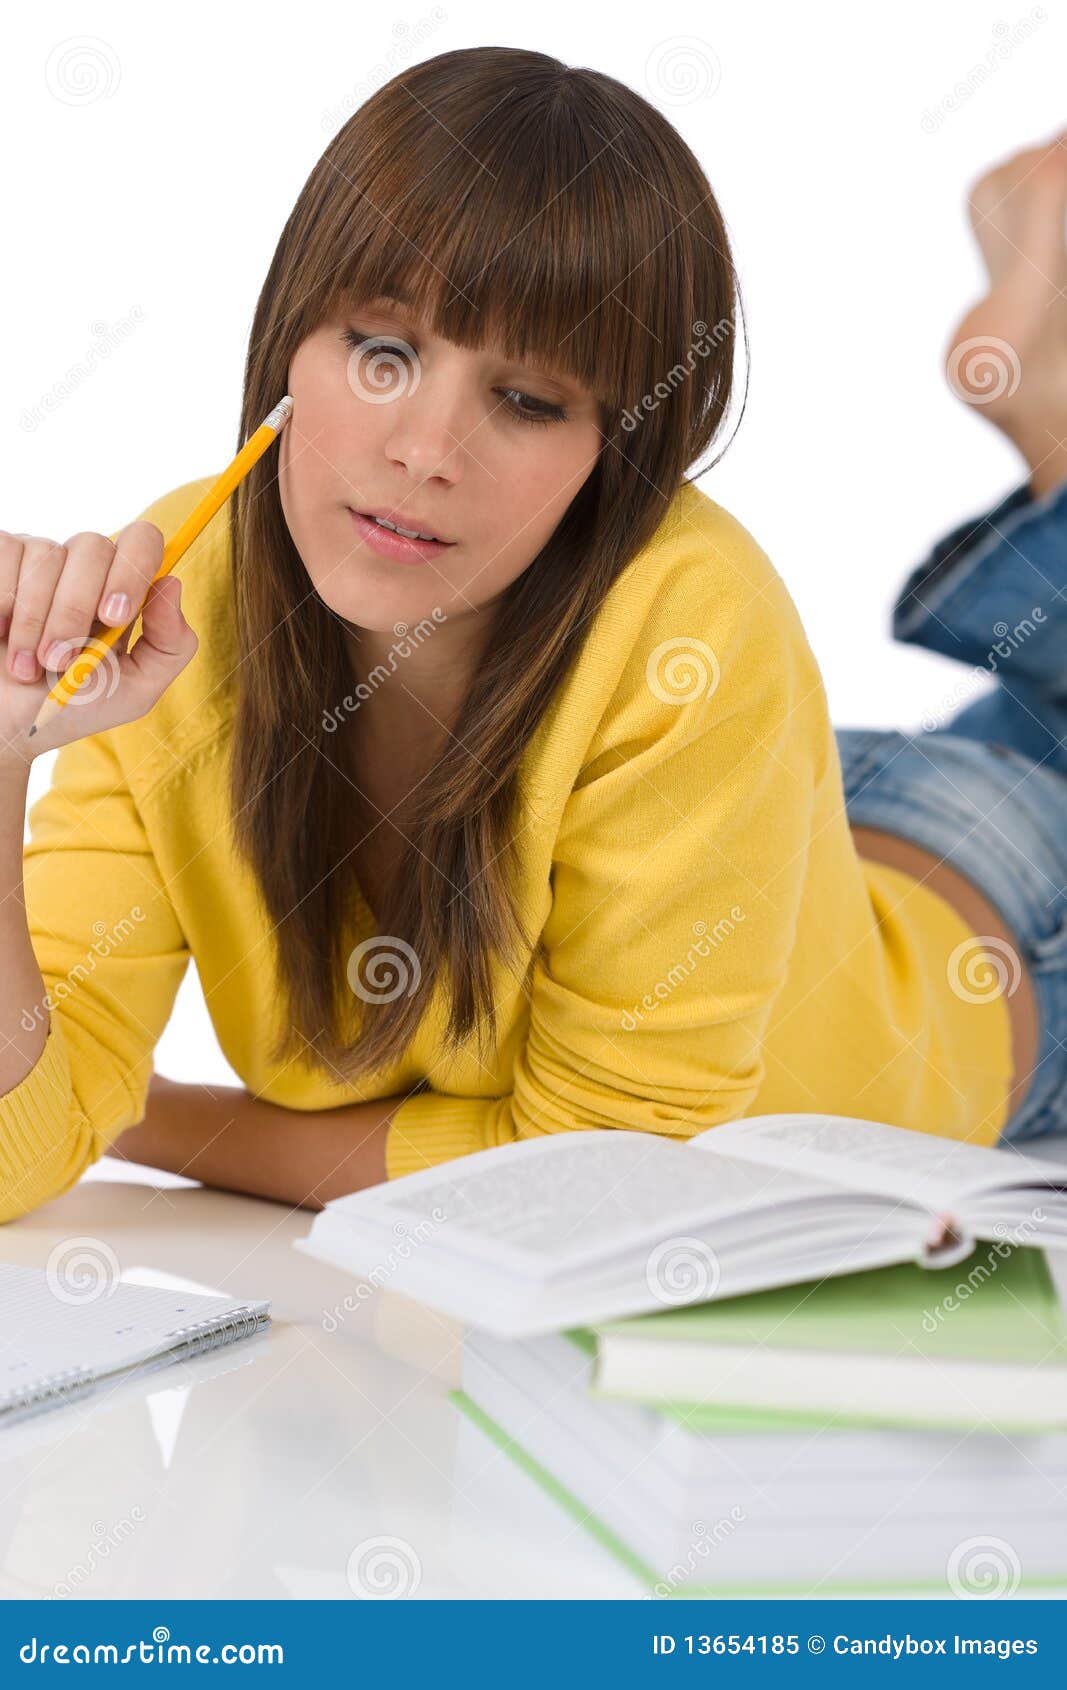 Читать про студентку. Девушка студент. Женщина с книгой фото. Женщина пишет домашнее задание. Женщина за работой книги.